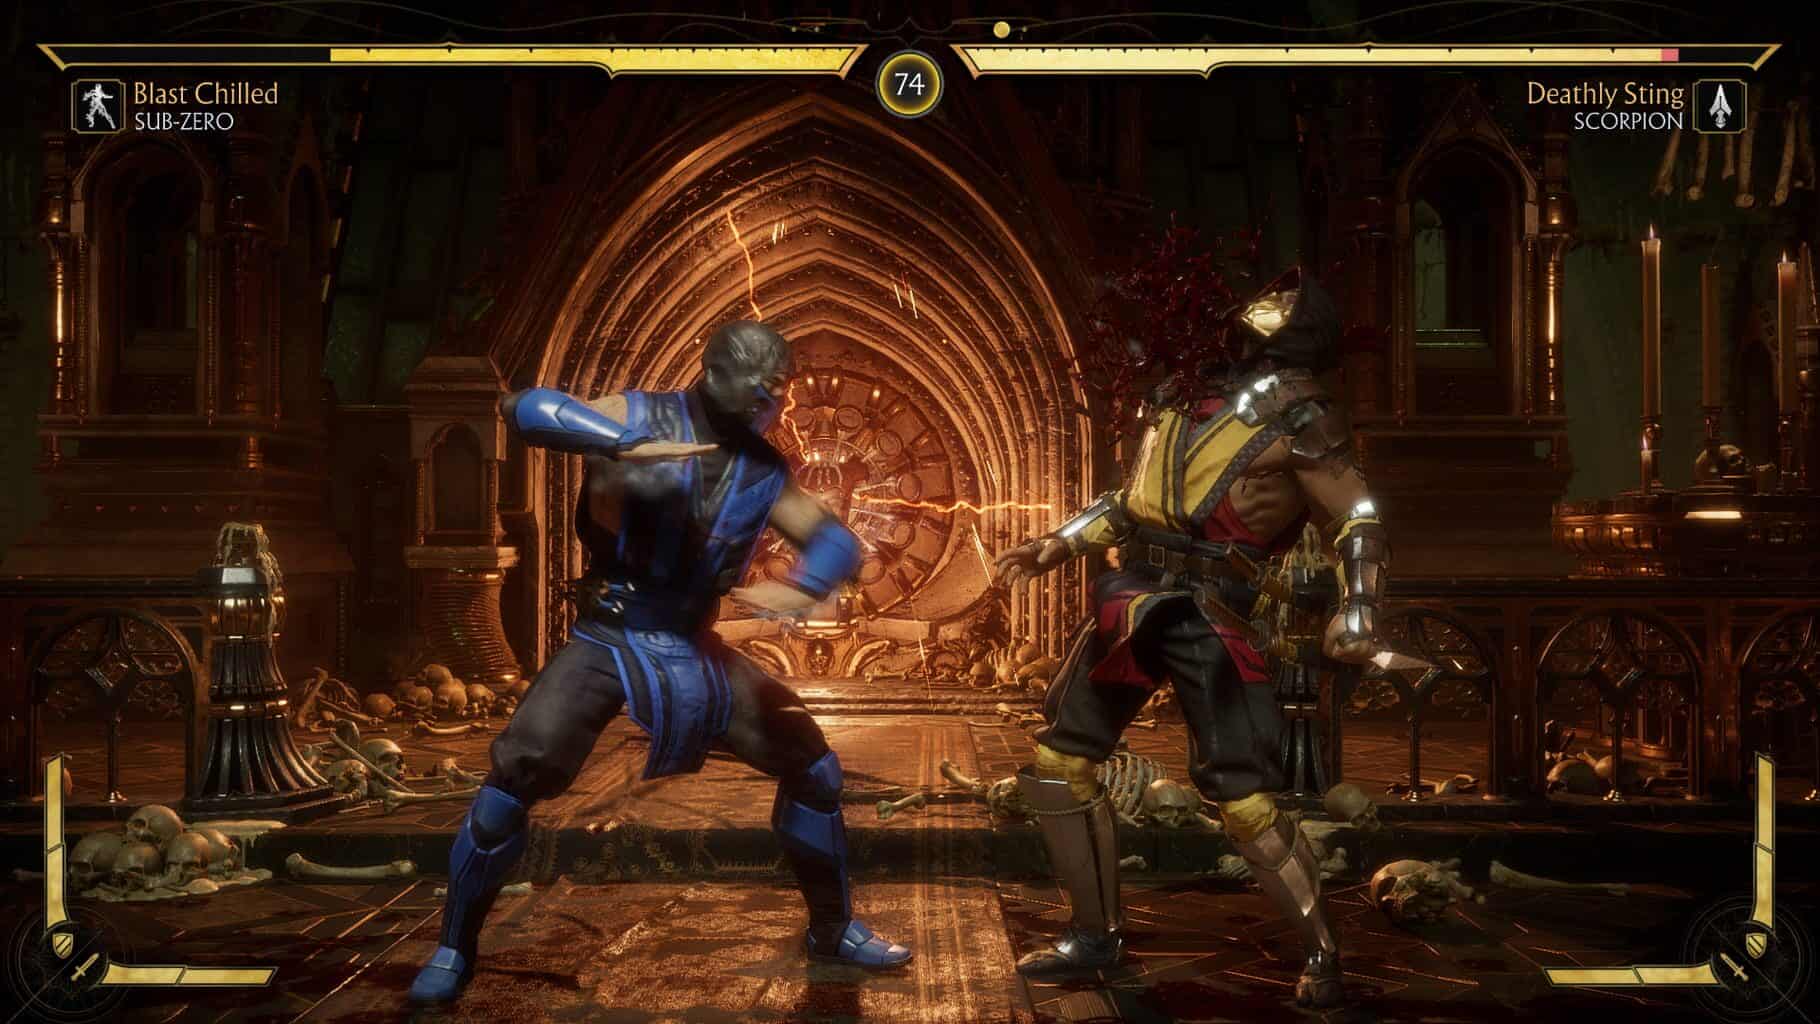 Mortal Kombat Trilogy (Playstation) - Shang Tsung Playthrough [HD]